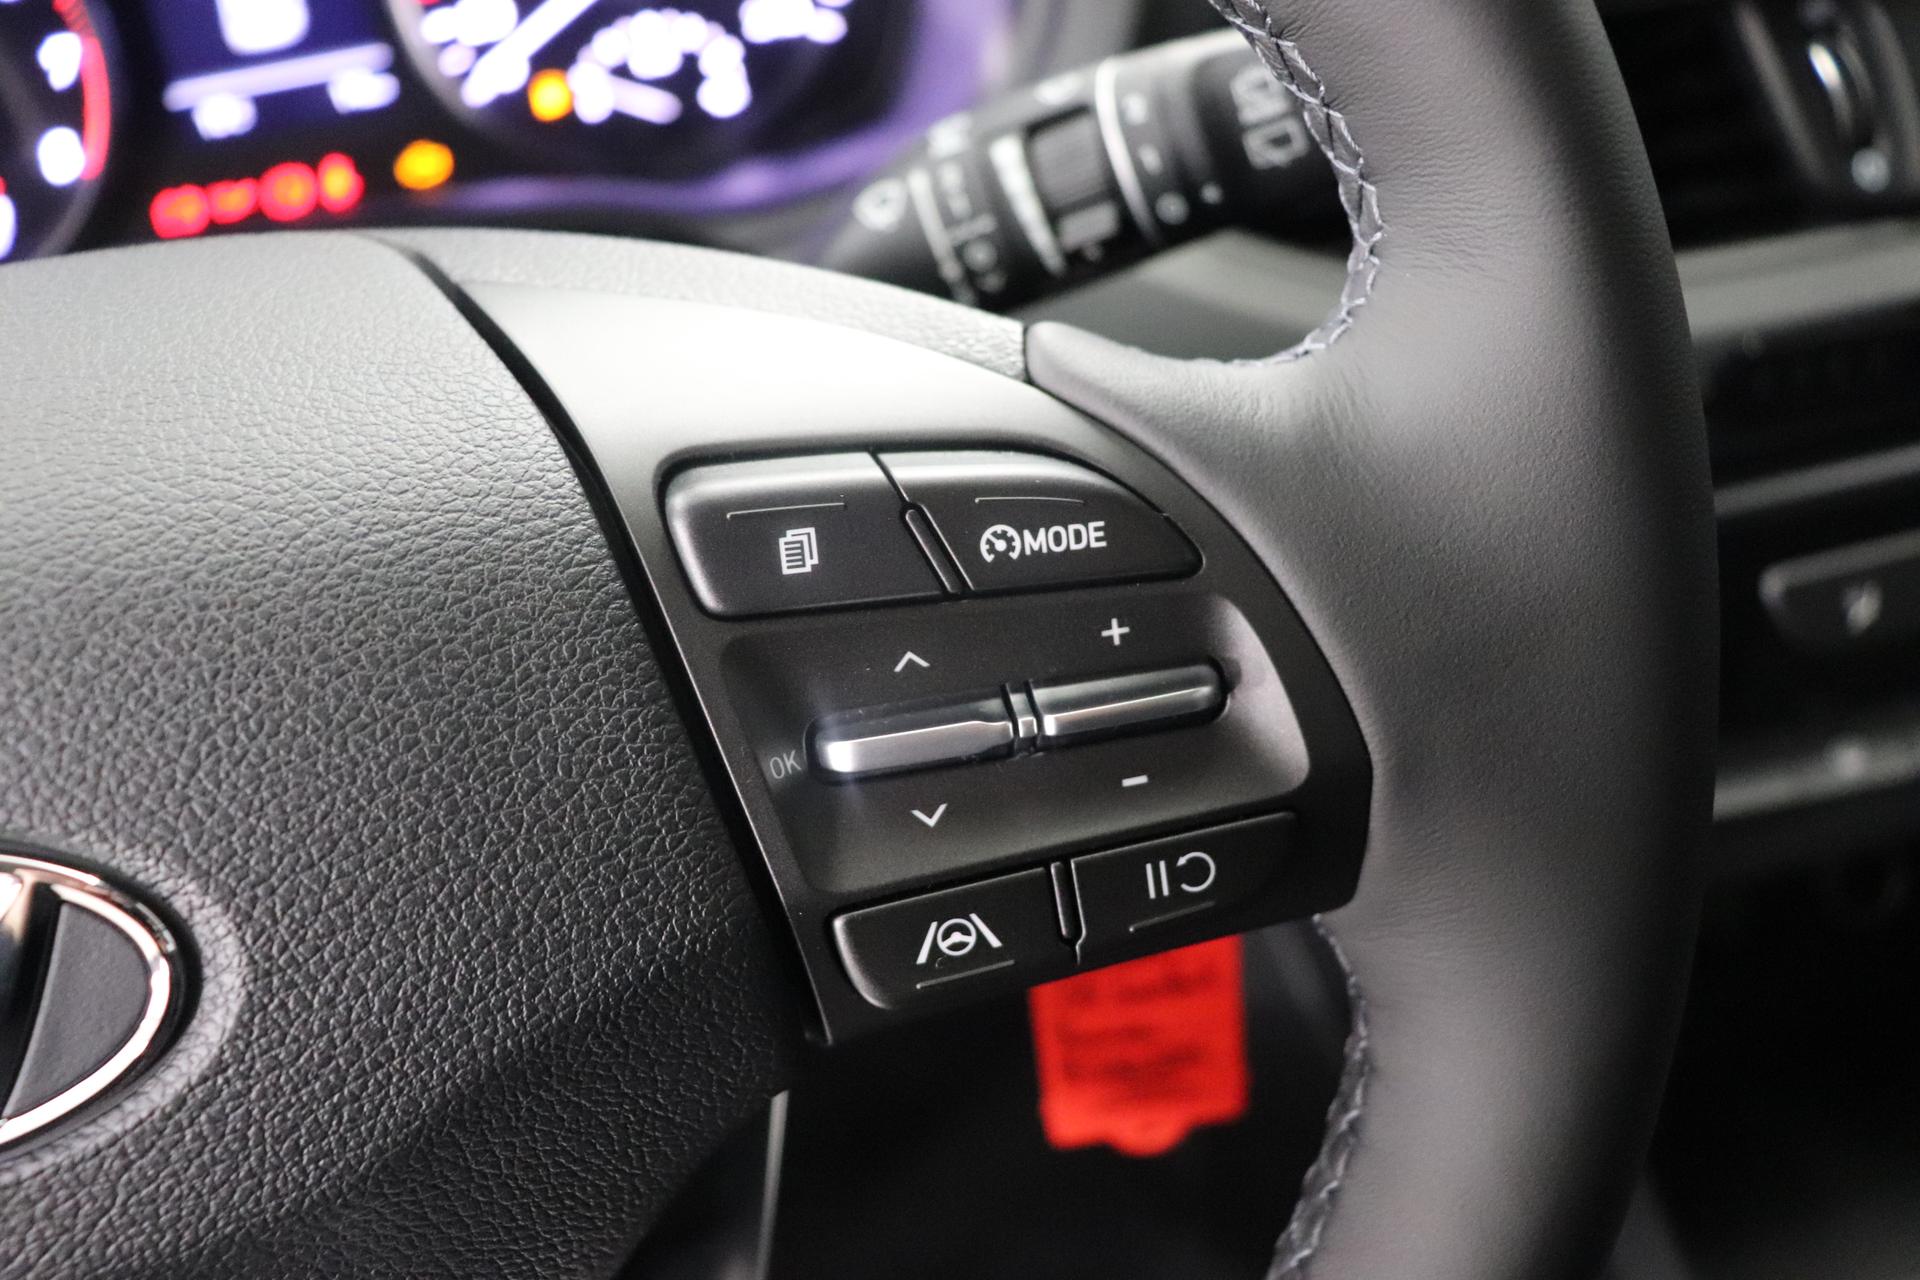 Hyundai i30 Comfort 1.0 T-GDi 7DCT FL, Klimaanlage, Sitzheizung,  Lederlenkrad, Radio DAB, Freisprecheinrichtung, Lichtsensor, Tempomat,  Einparkhilfe hinten, Nebelscheinwerfer, 16 Zoll Leichtmetallfelgen, uvm., EU-Neuwagen & Reimporte